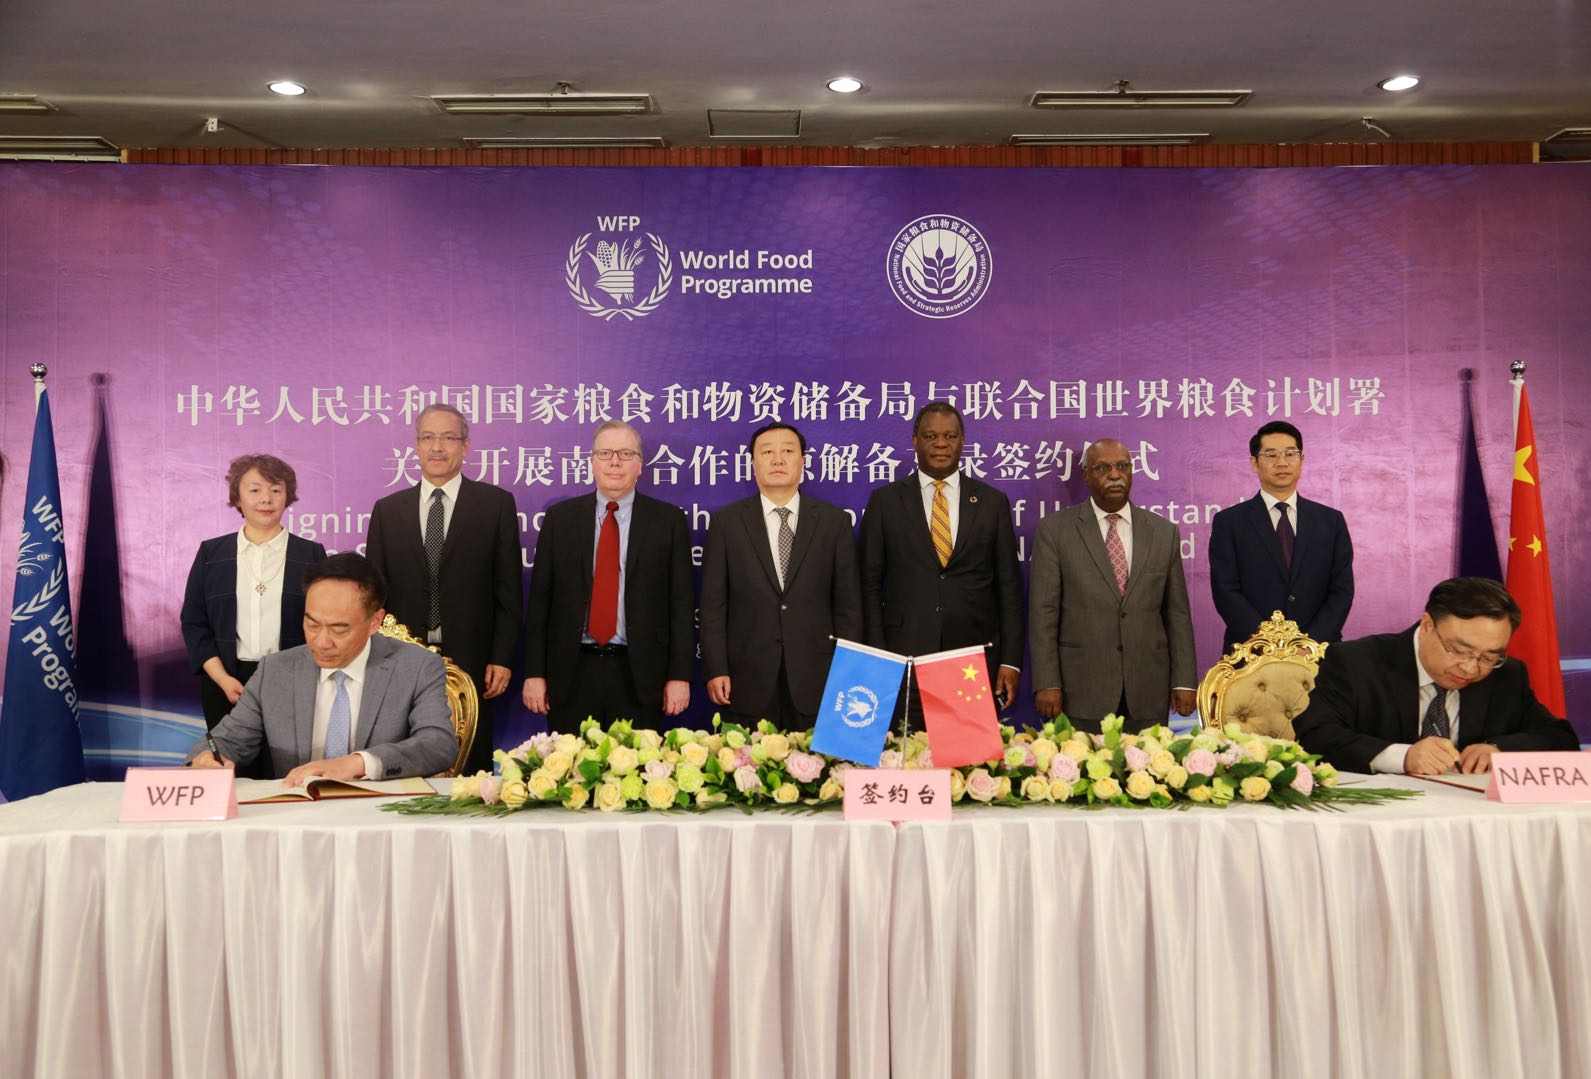 WFP中国办公室主任屈四喜和国家粮食和物资储备局党组成员、副局长卢景波代表双方签约